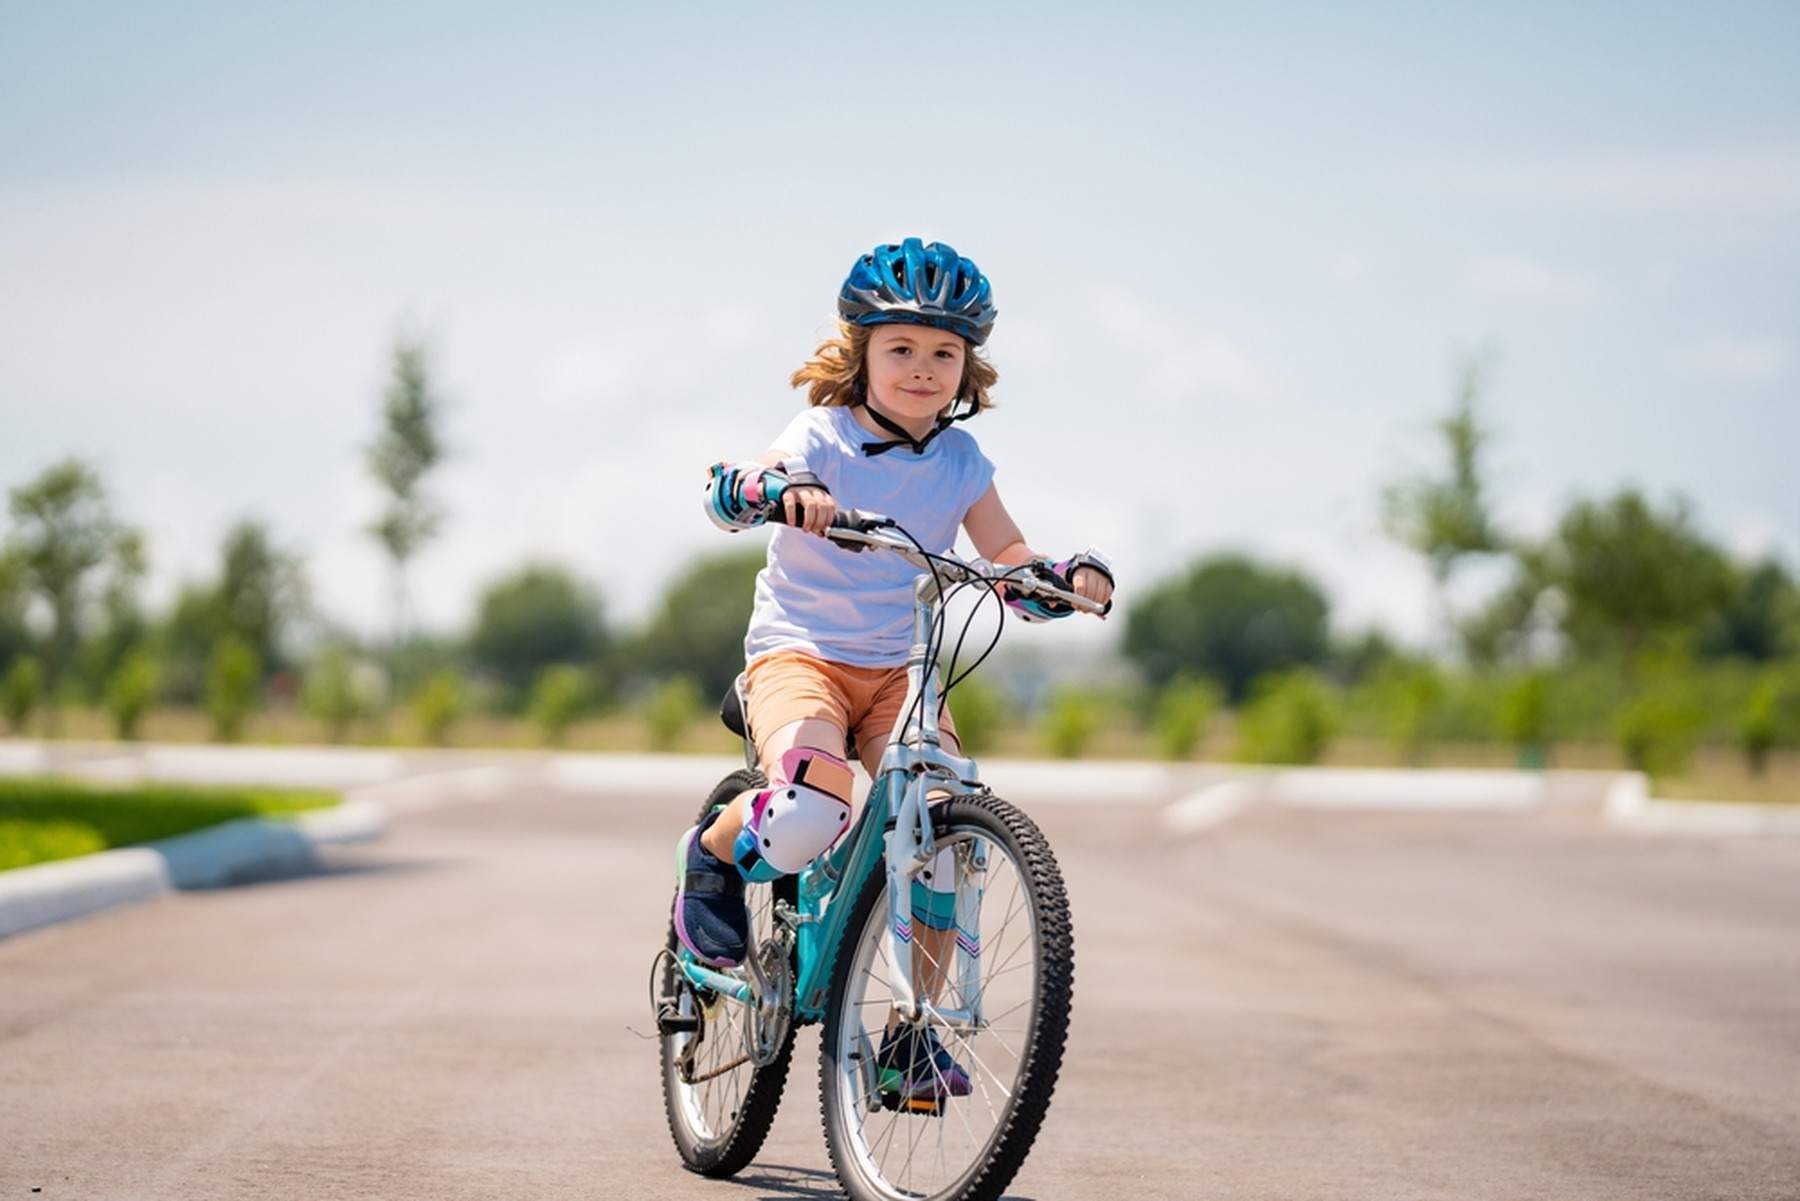 Niño montando en una bicicleta azul en una zona de asfalto en un parque. El niño lleva un casco azul, coderas y rodilleras